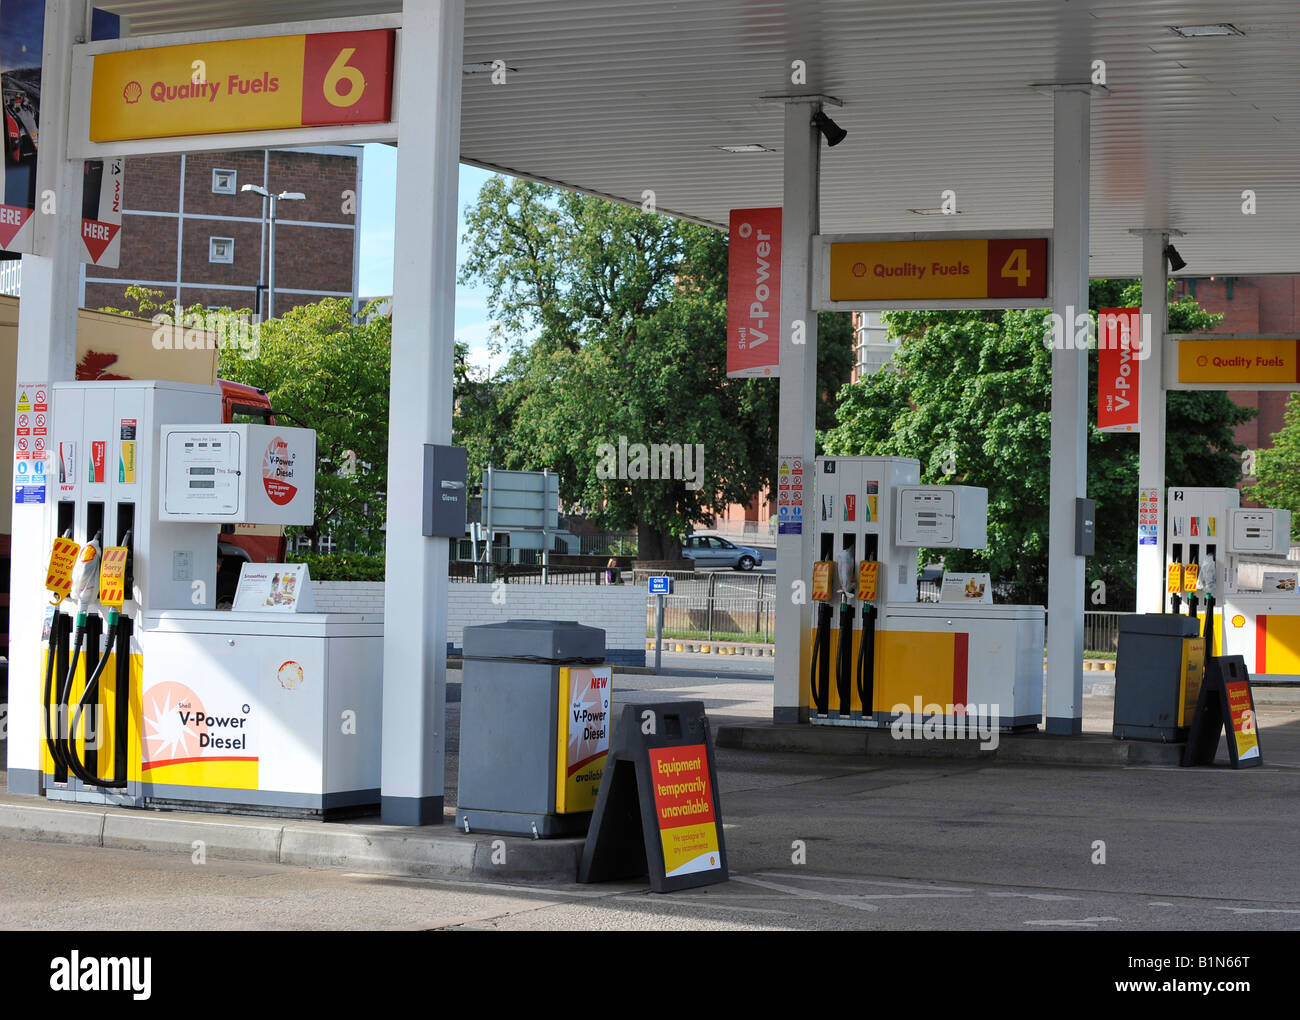 La gasolina sin plomo y el gasóleo bombas fuera de uso no disponible en una gasolinera Shell Foto de stock